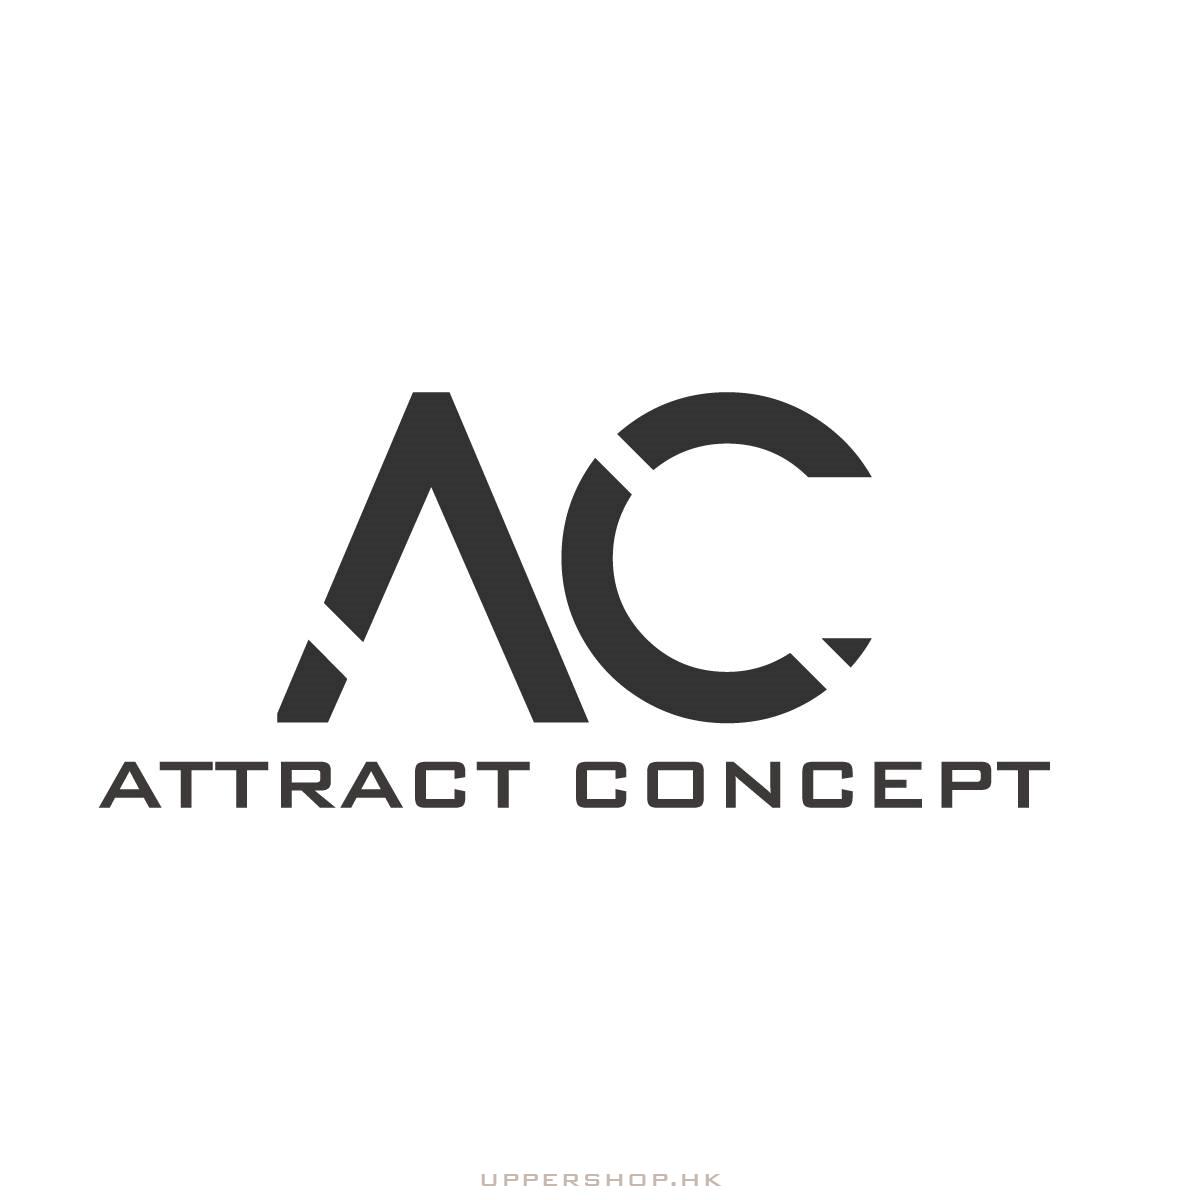 Attract Concept Design